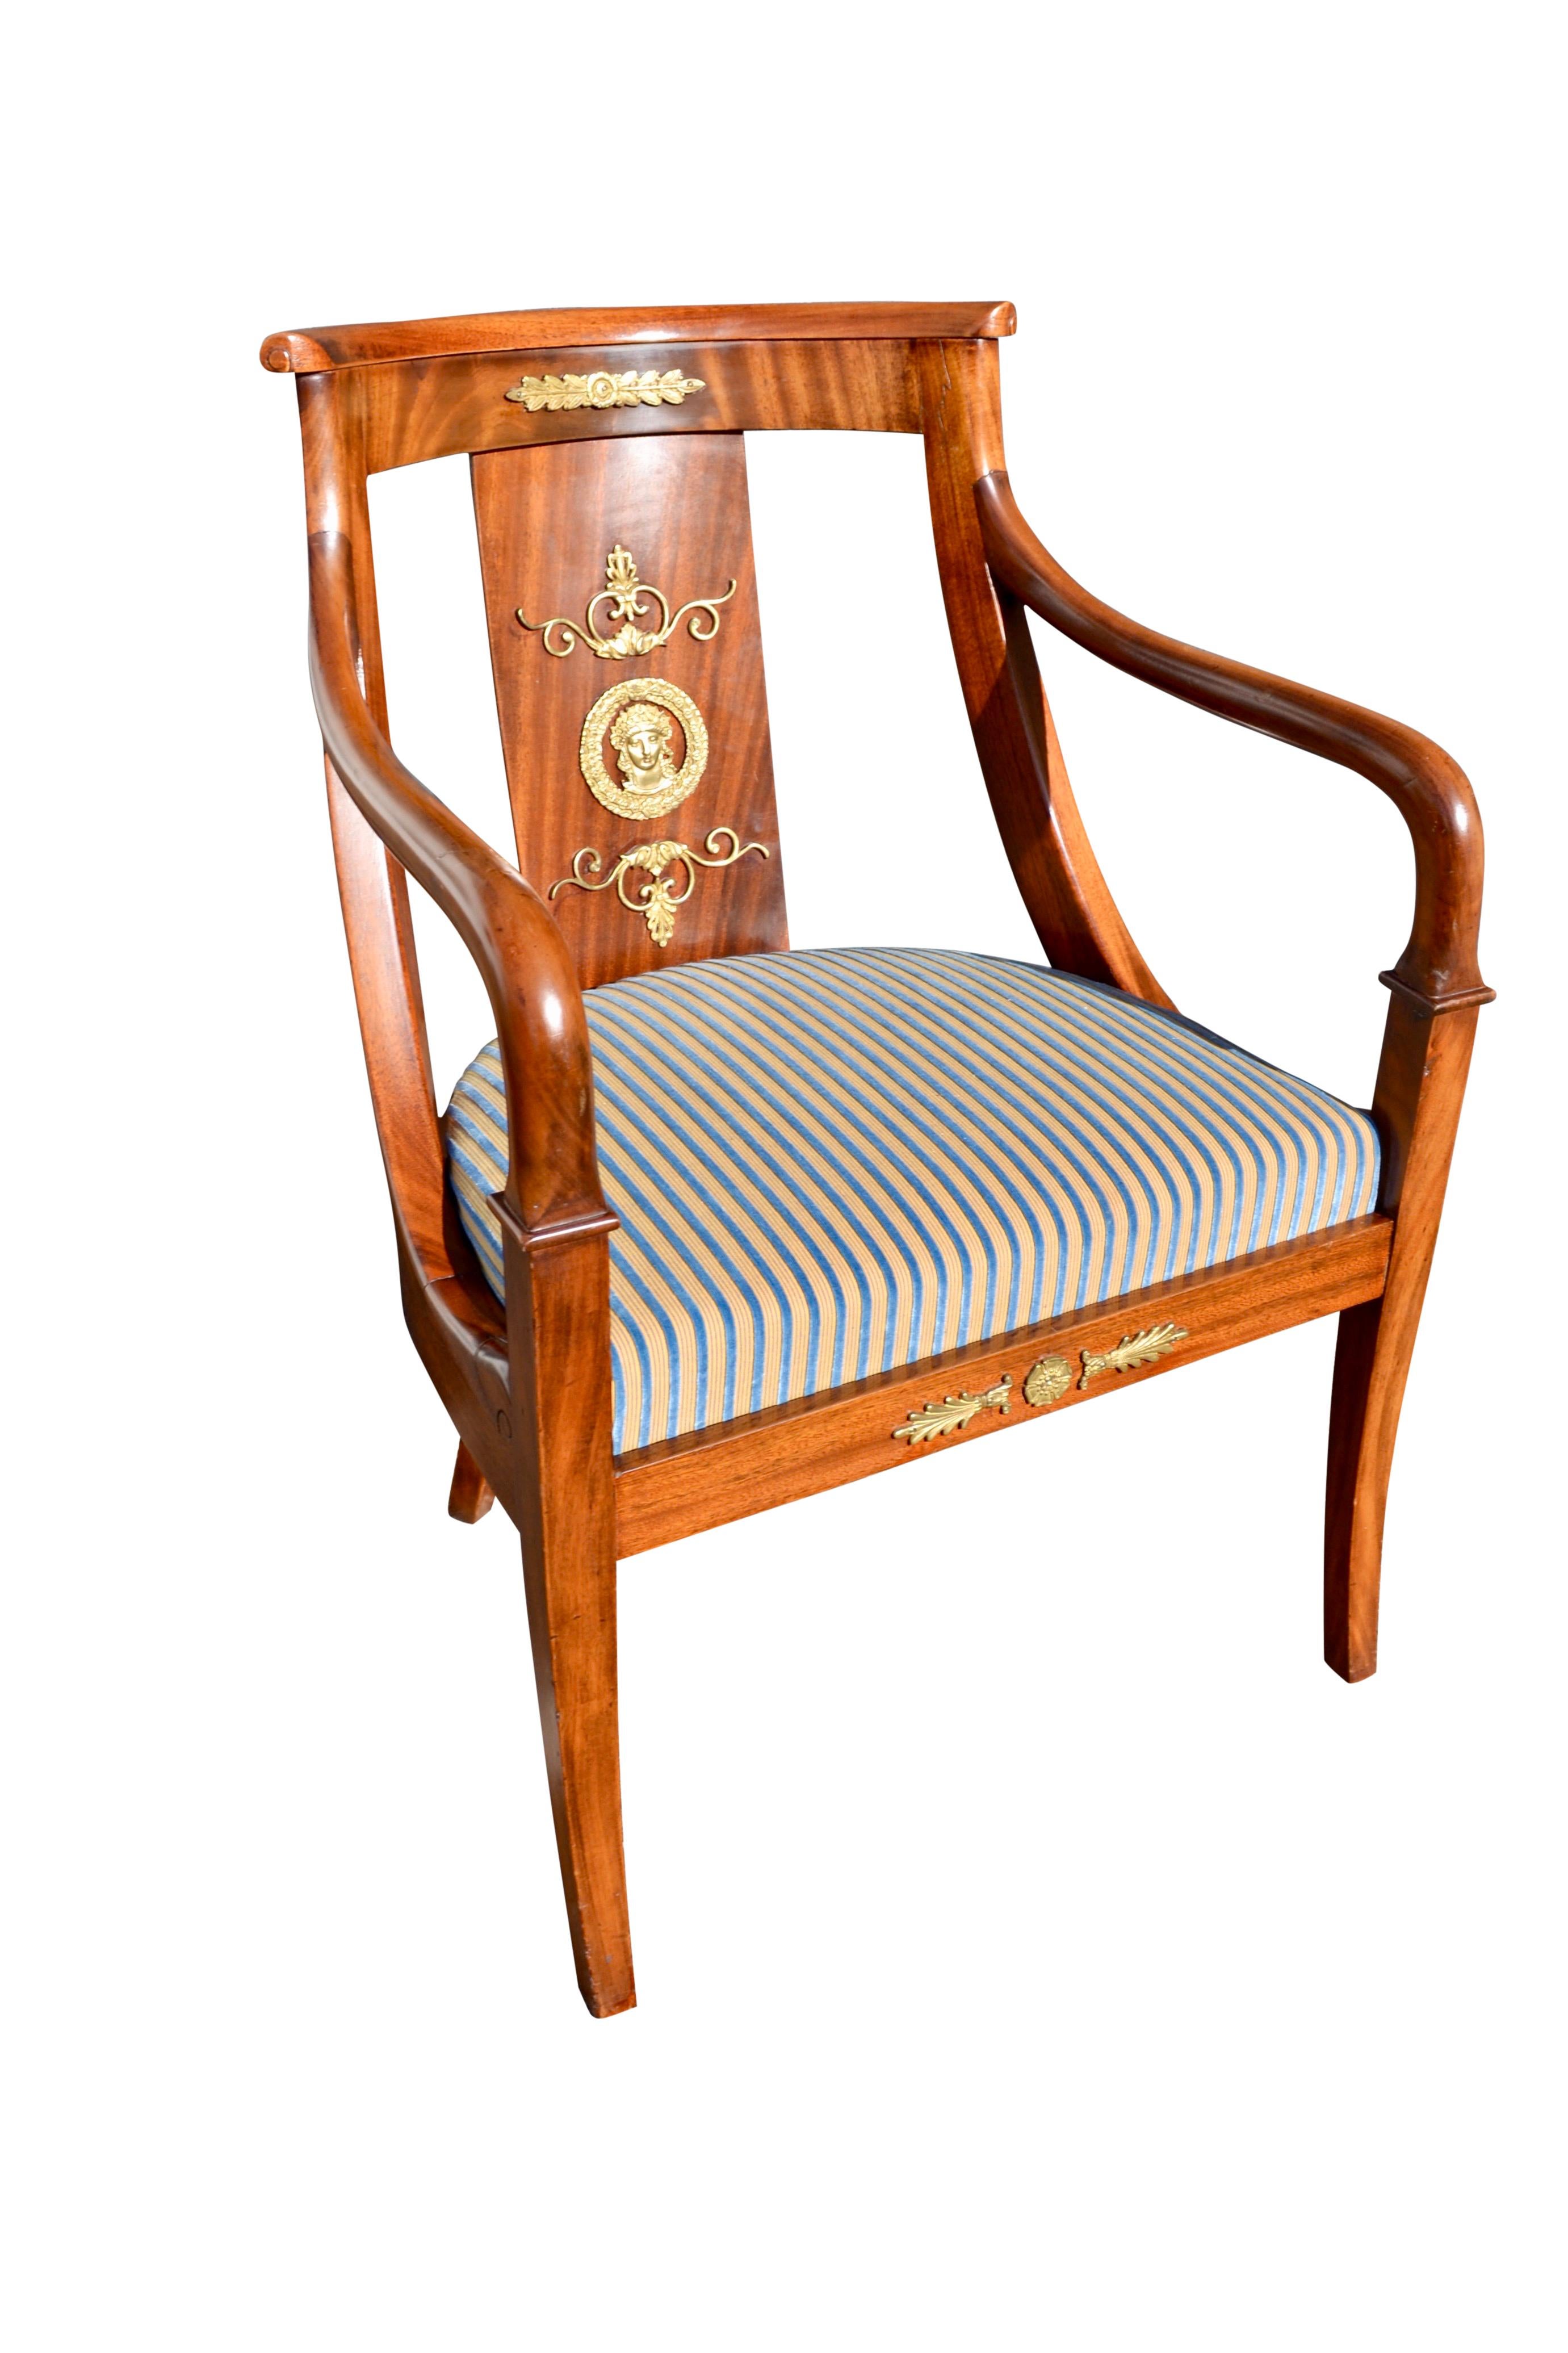 Un très bel ensemble de chaises de gondole pour les repas/occasions ; deux fauteuils ouverts et quatre chaises latérales. Les cadres des chaises sont en acajou et sont richement décorés de montures en bronze doré représentant une tête féminine